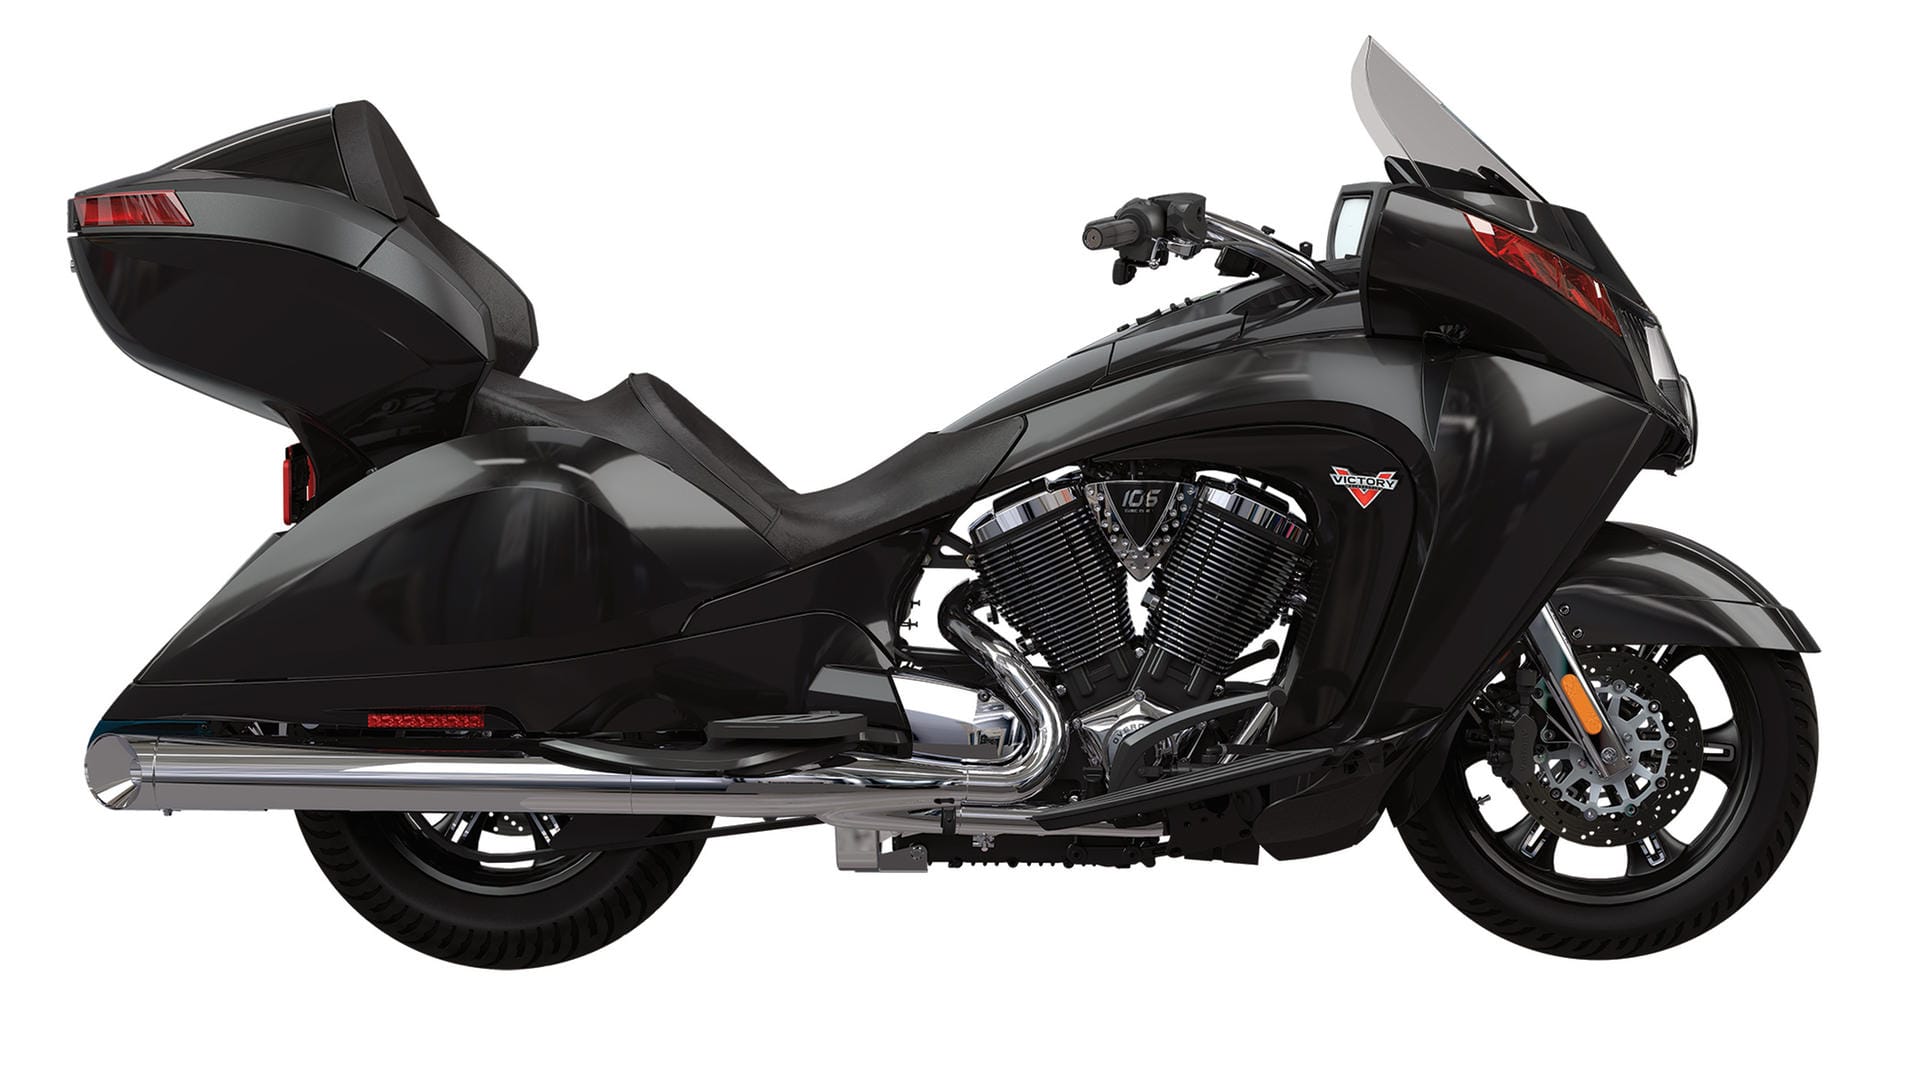 Die Tourer sehen deutlich futuristischer aus, als vergleichbare Motorräder von Harley-Davidson oder anderen Herstellern.